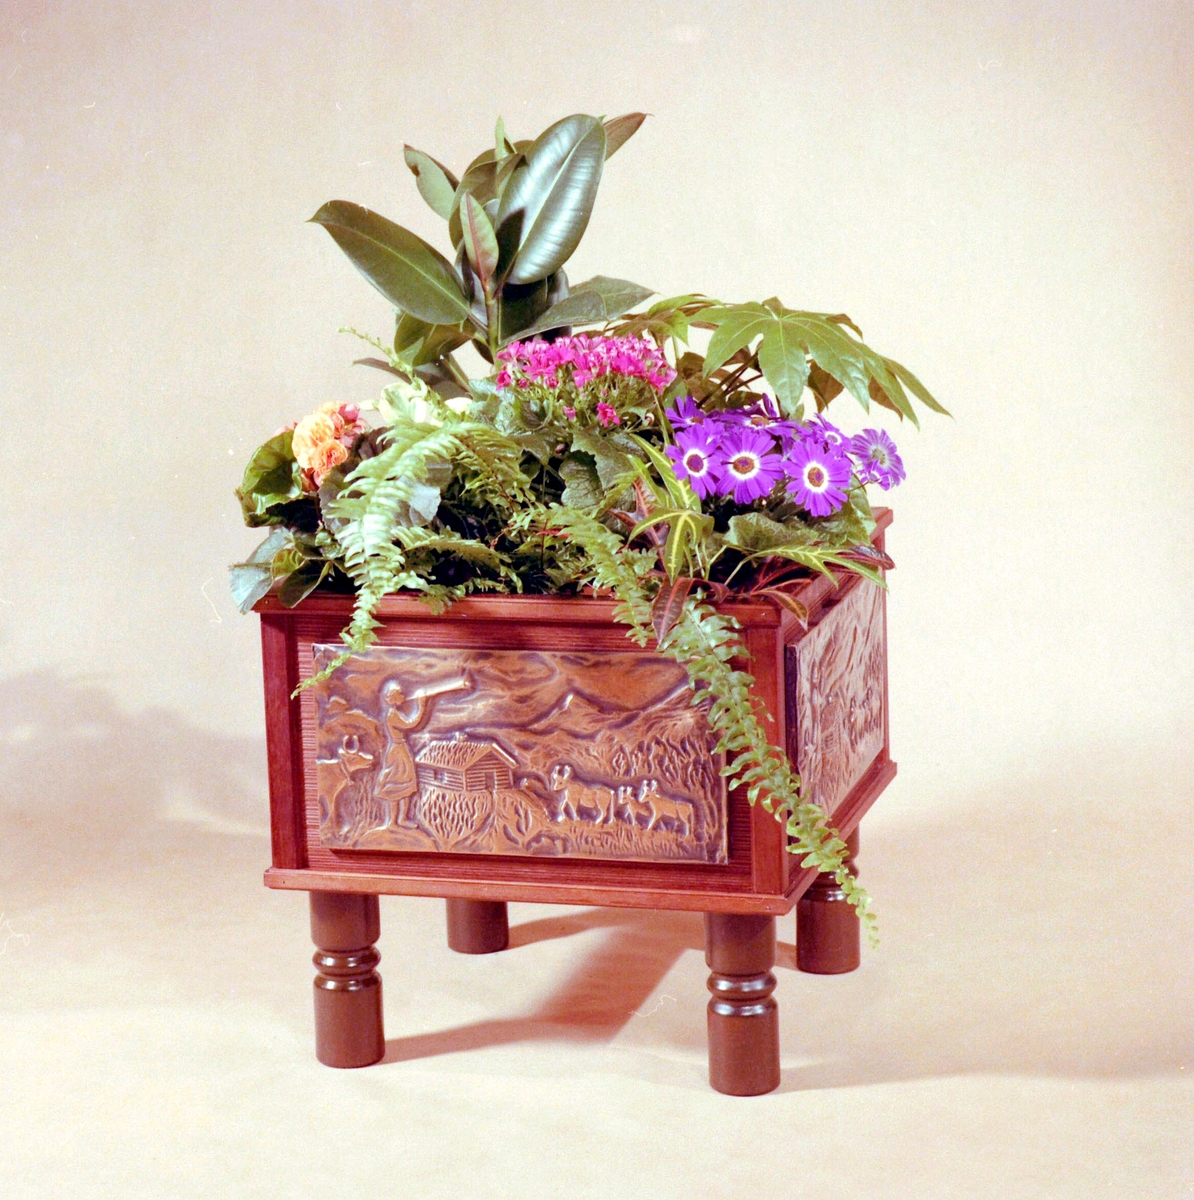 Blomster-/ plantekasse i tre med utskorne motiv på sidene.